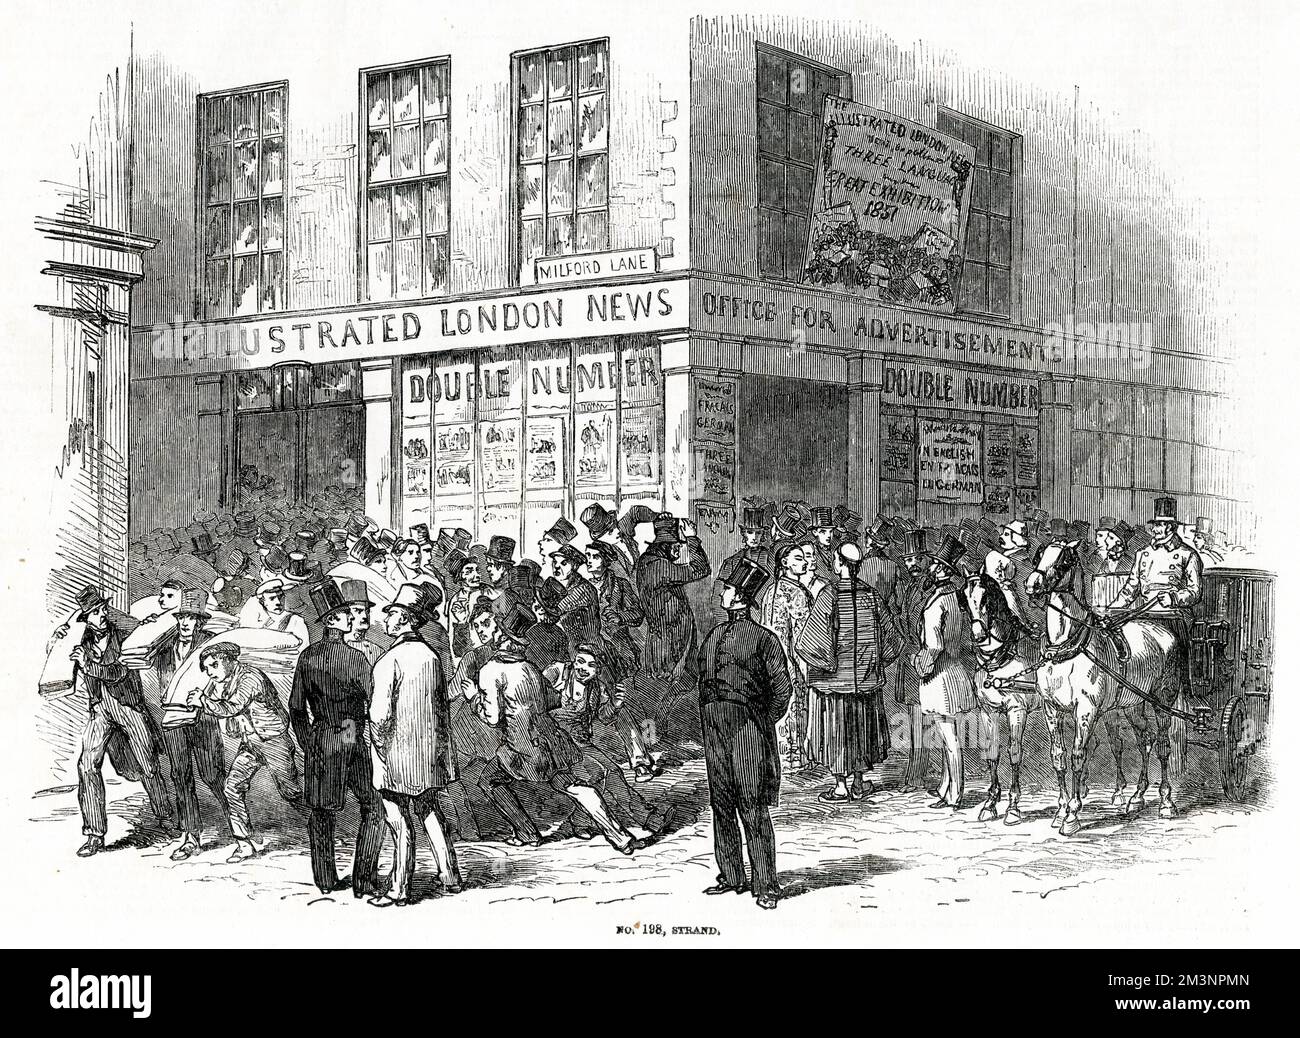 The Illustrated London News, una rivista settimanale di notizie, è stato pubblicato da 198 Strand all'angolo con Milford Lane e come il documento ampliato ha acquisito Milford House e altri edifici nella corsia. Data: 1851 Foto Stock